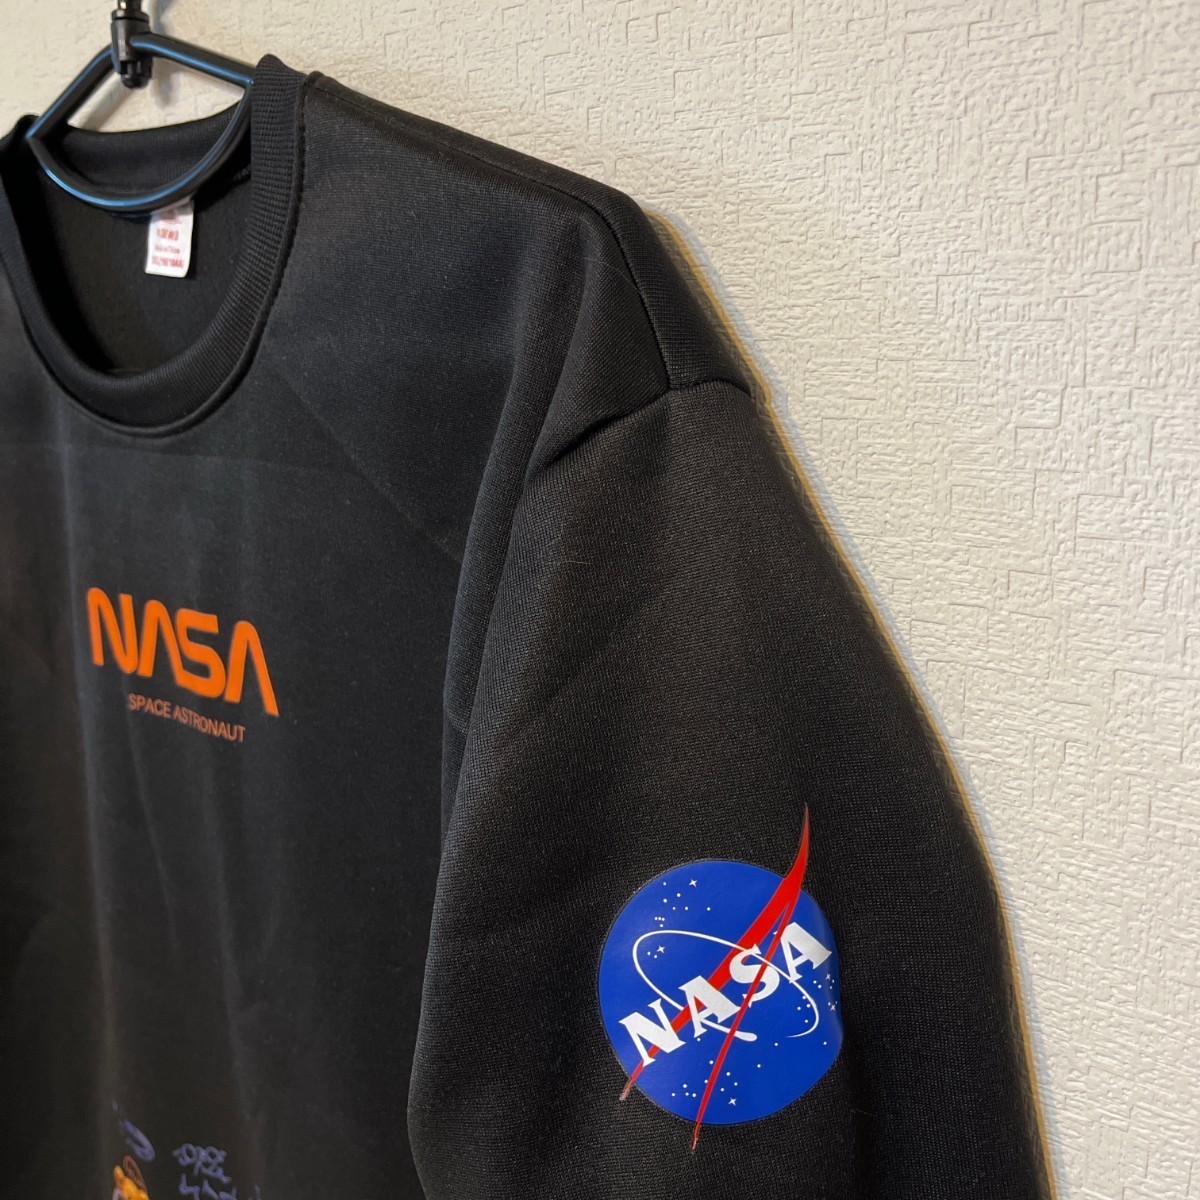 ベアー トレーナー ロングシャツ 長袖 日本未入荷 プレゼント パーカー 新品 NASA 宇宙飛行士 宇宙 裏起毛 厚手 メンズ ブラック 黒